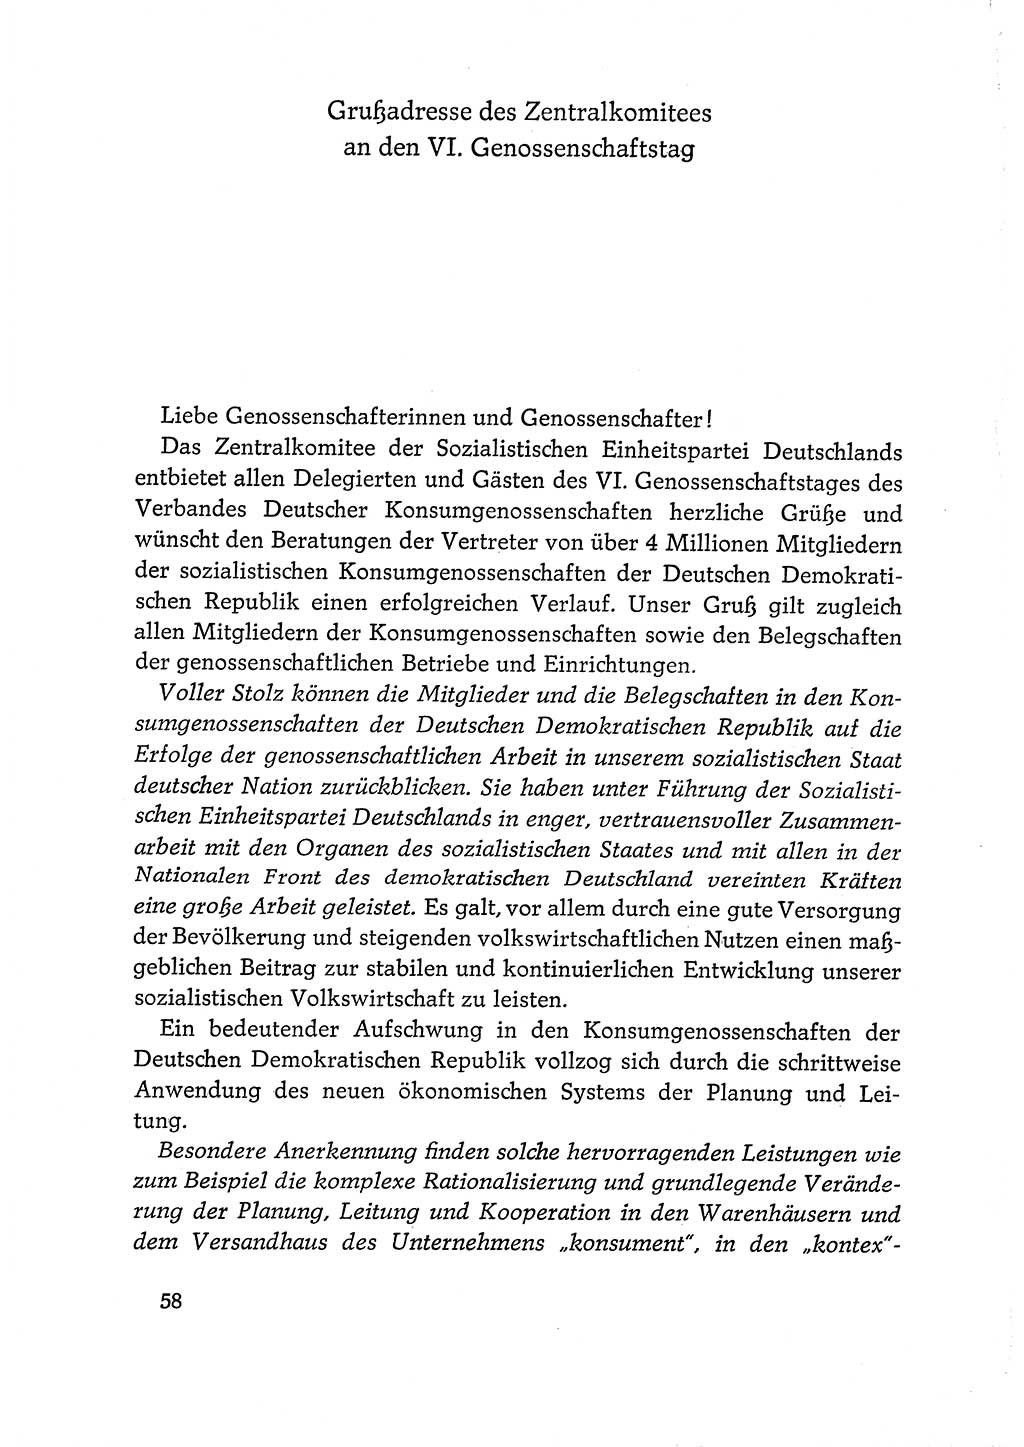 Dokumente der Sozialistischen Einheitspartei Deutschlands (SED) [Deutsche Demokratische Republik (DDR)] 1968-1969, Seite 58 (Dok. SED DDR 1968-1969, S. 58)